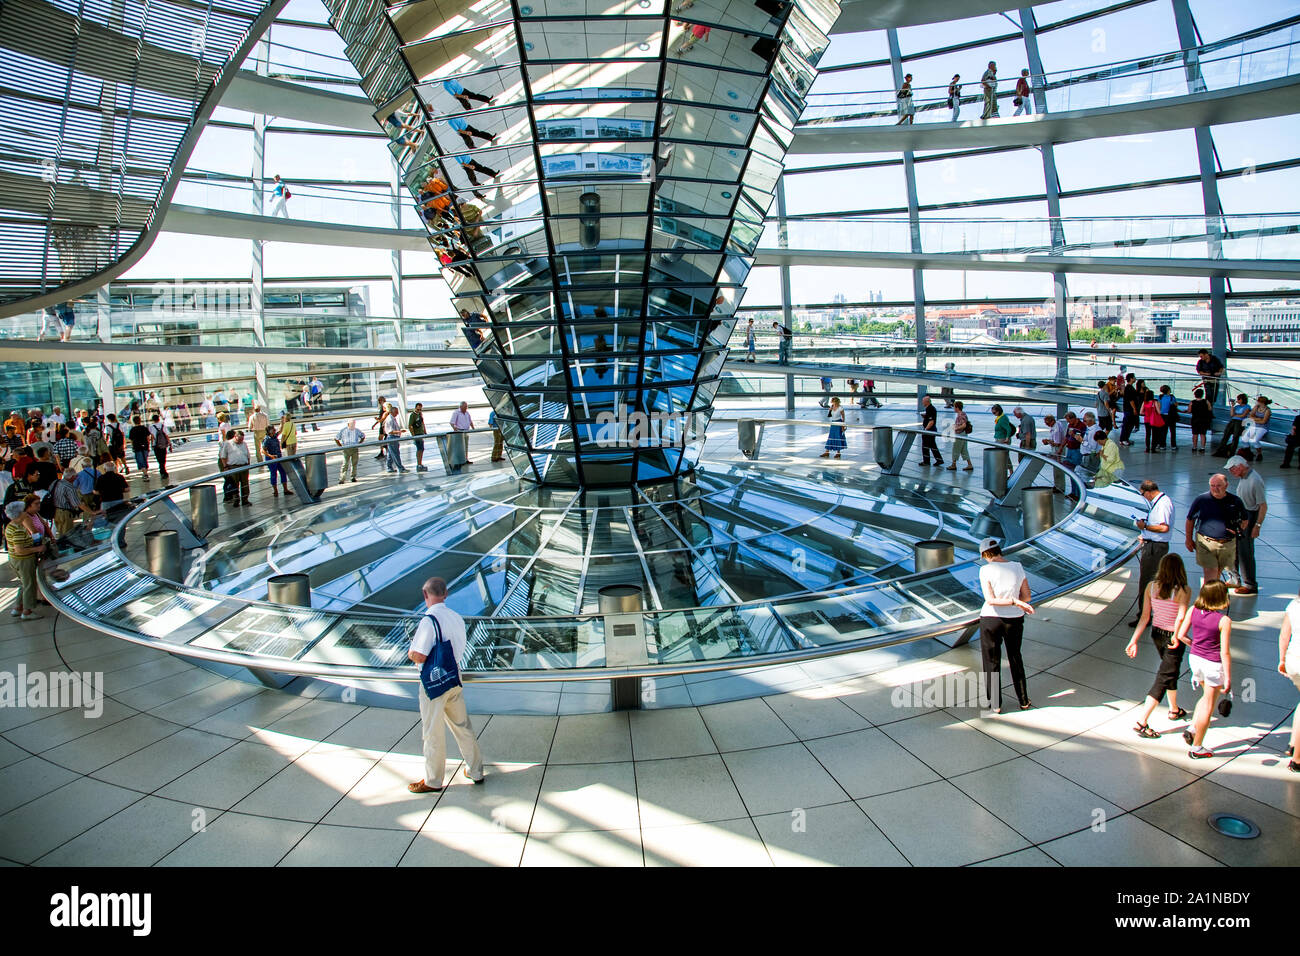 La cupola di vetro in cima al Reichstag dove i visitatori possono osservare il Bundestag - la Camera bassa del tedesco federale europeo. Berlino Germania Foto Stock